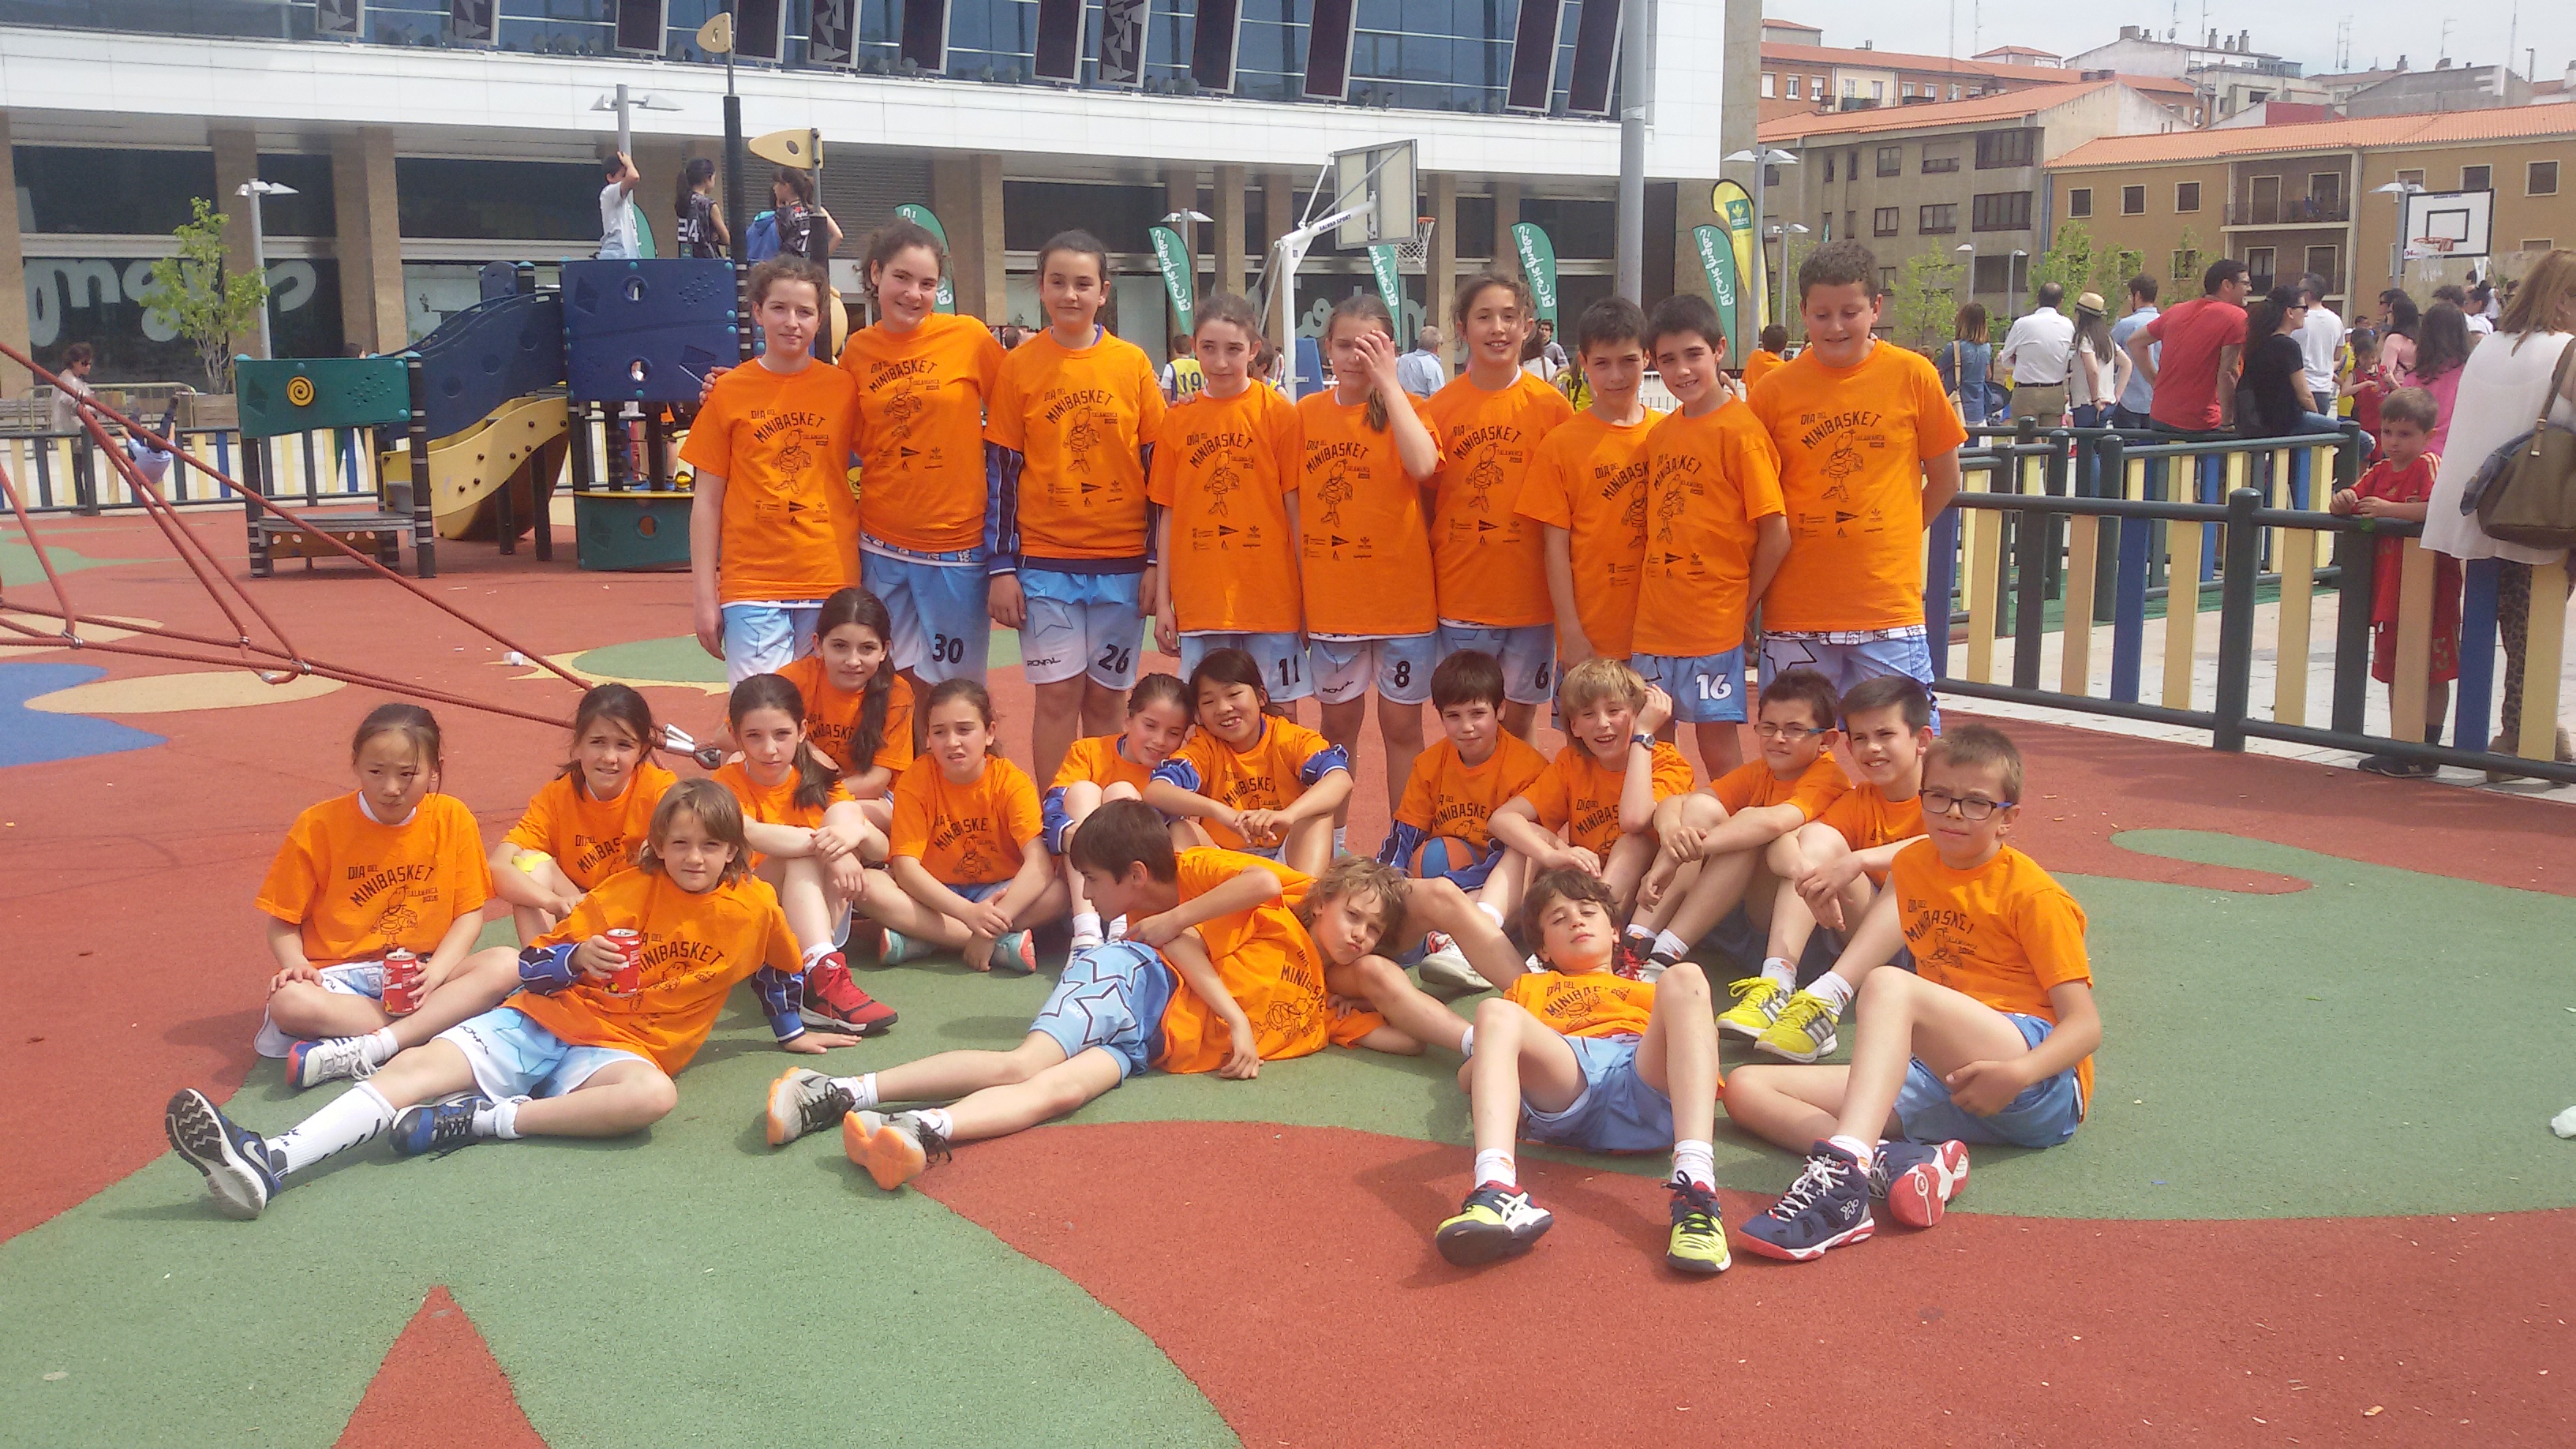 Baloncesto: las generaciones de 2005 se preparan intensamente para representar a Segovia